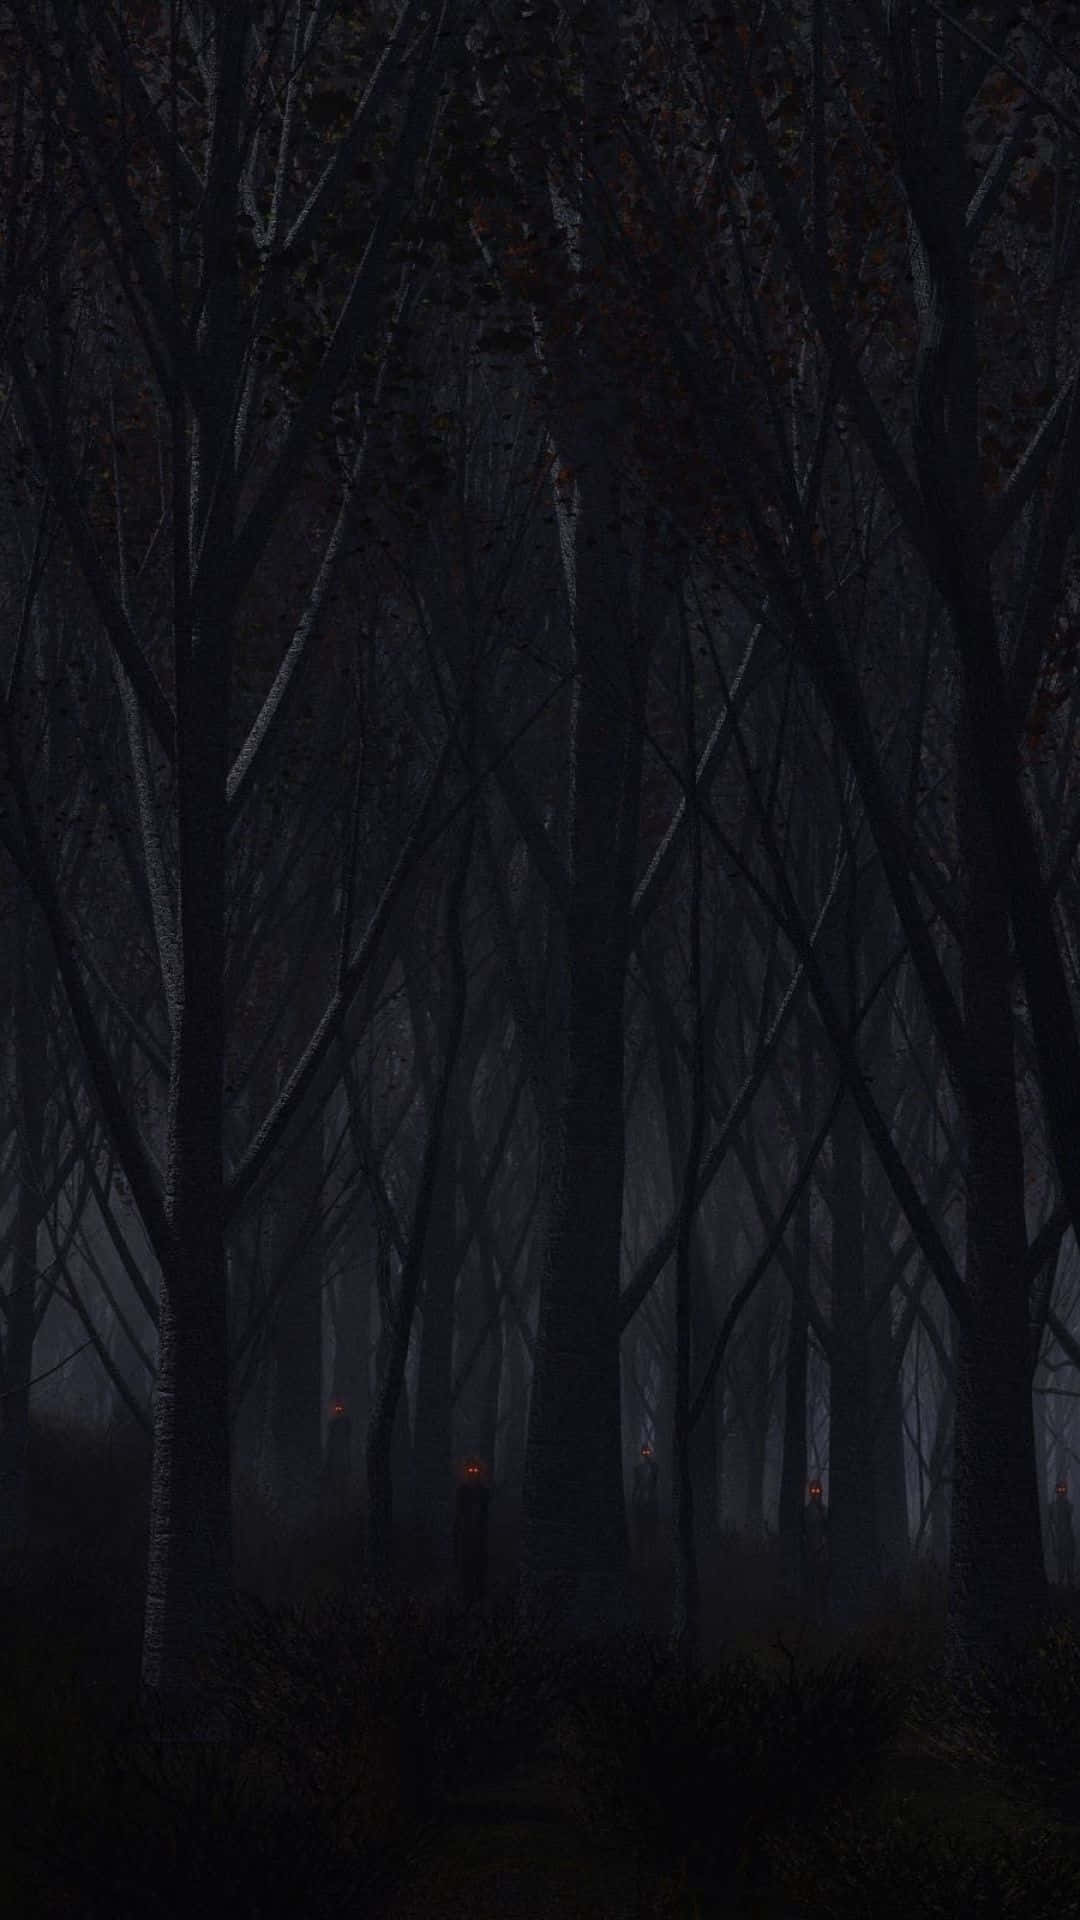 En mørk skov med træer og en lampe Wallpaper